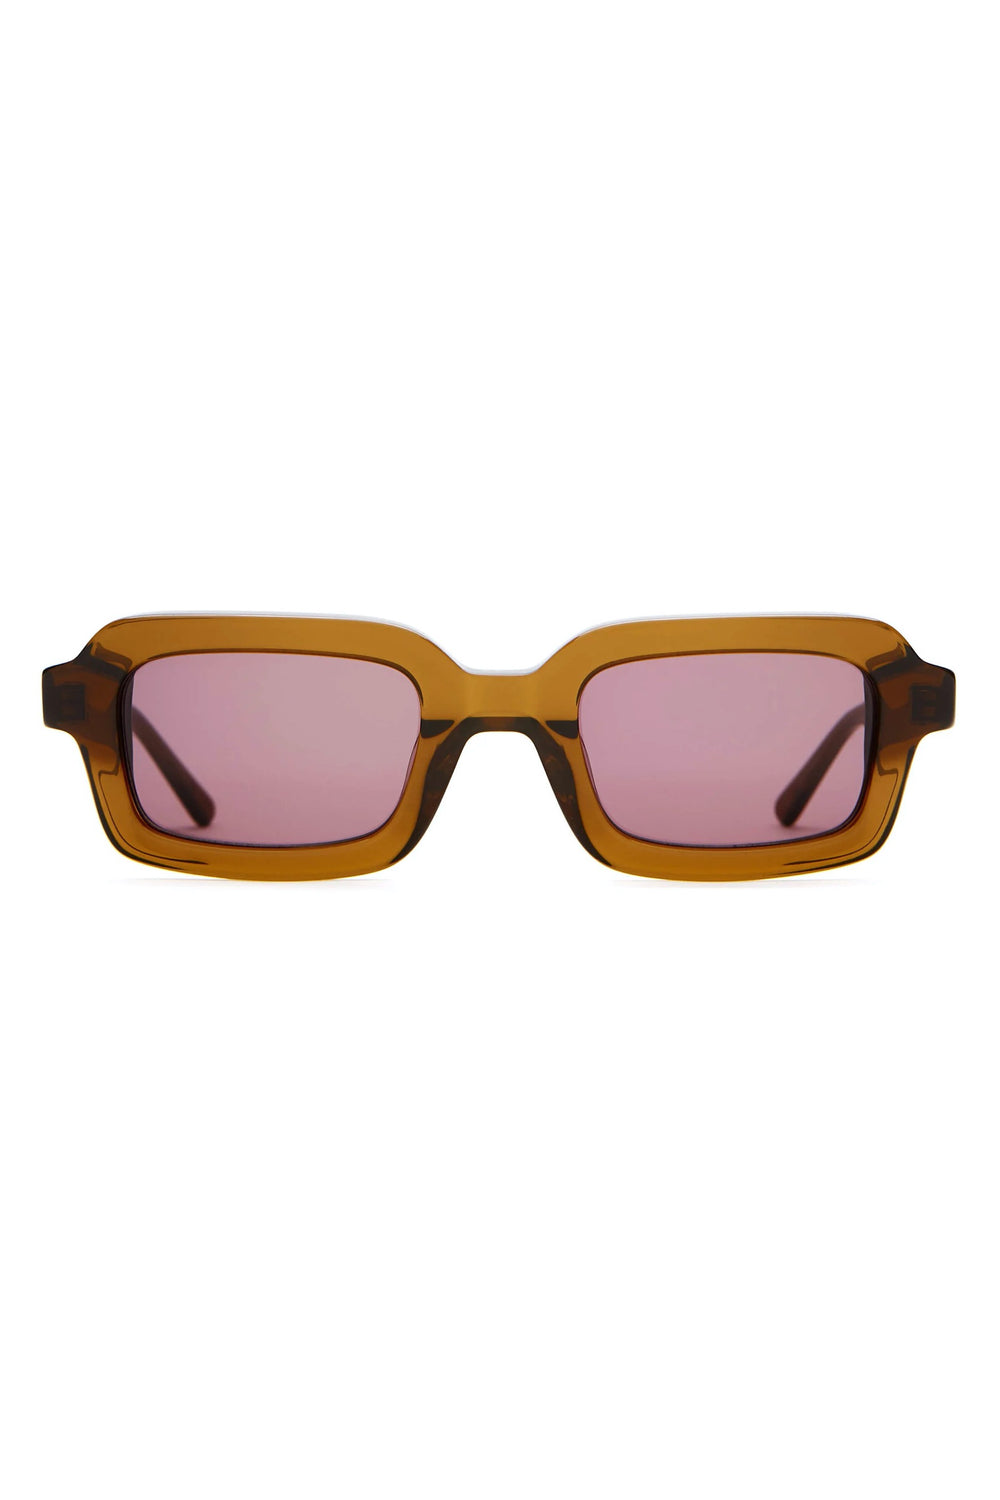 Crystal Hemp Lucid Blur Sunglasses